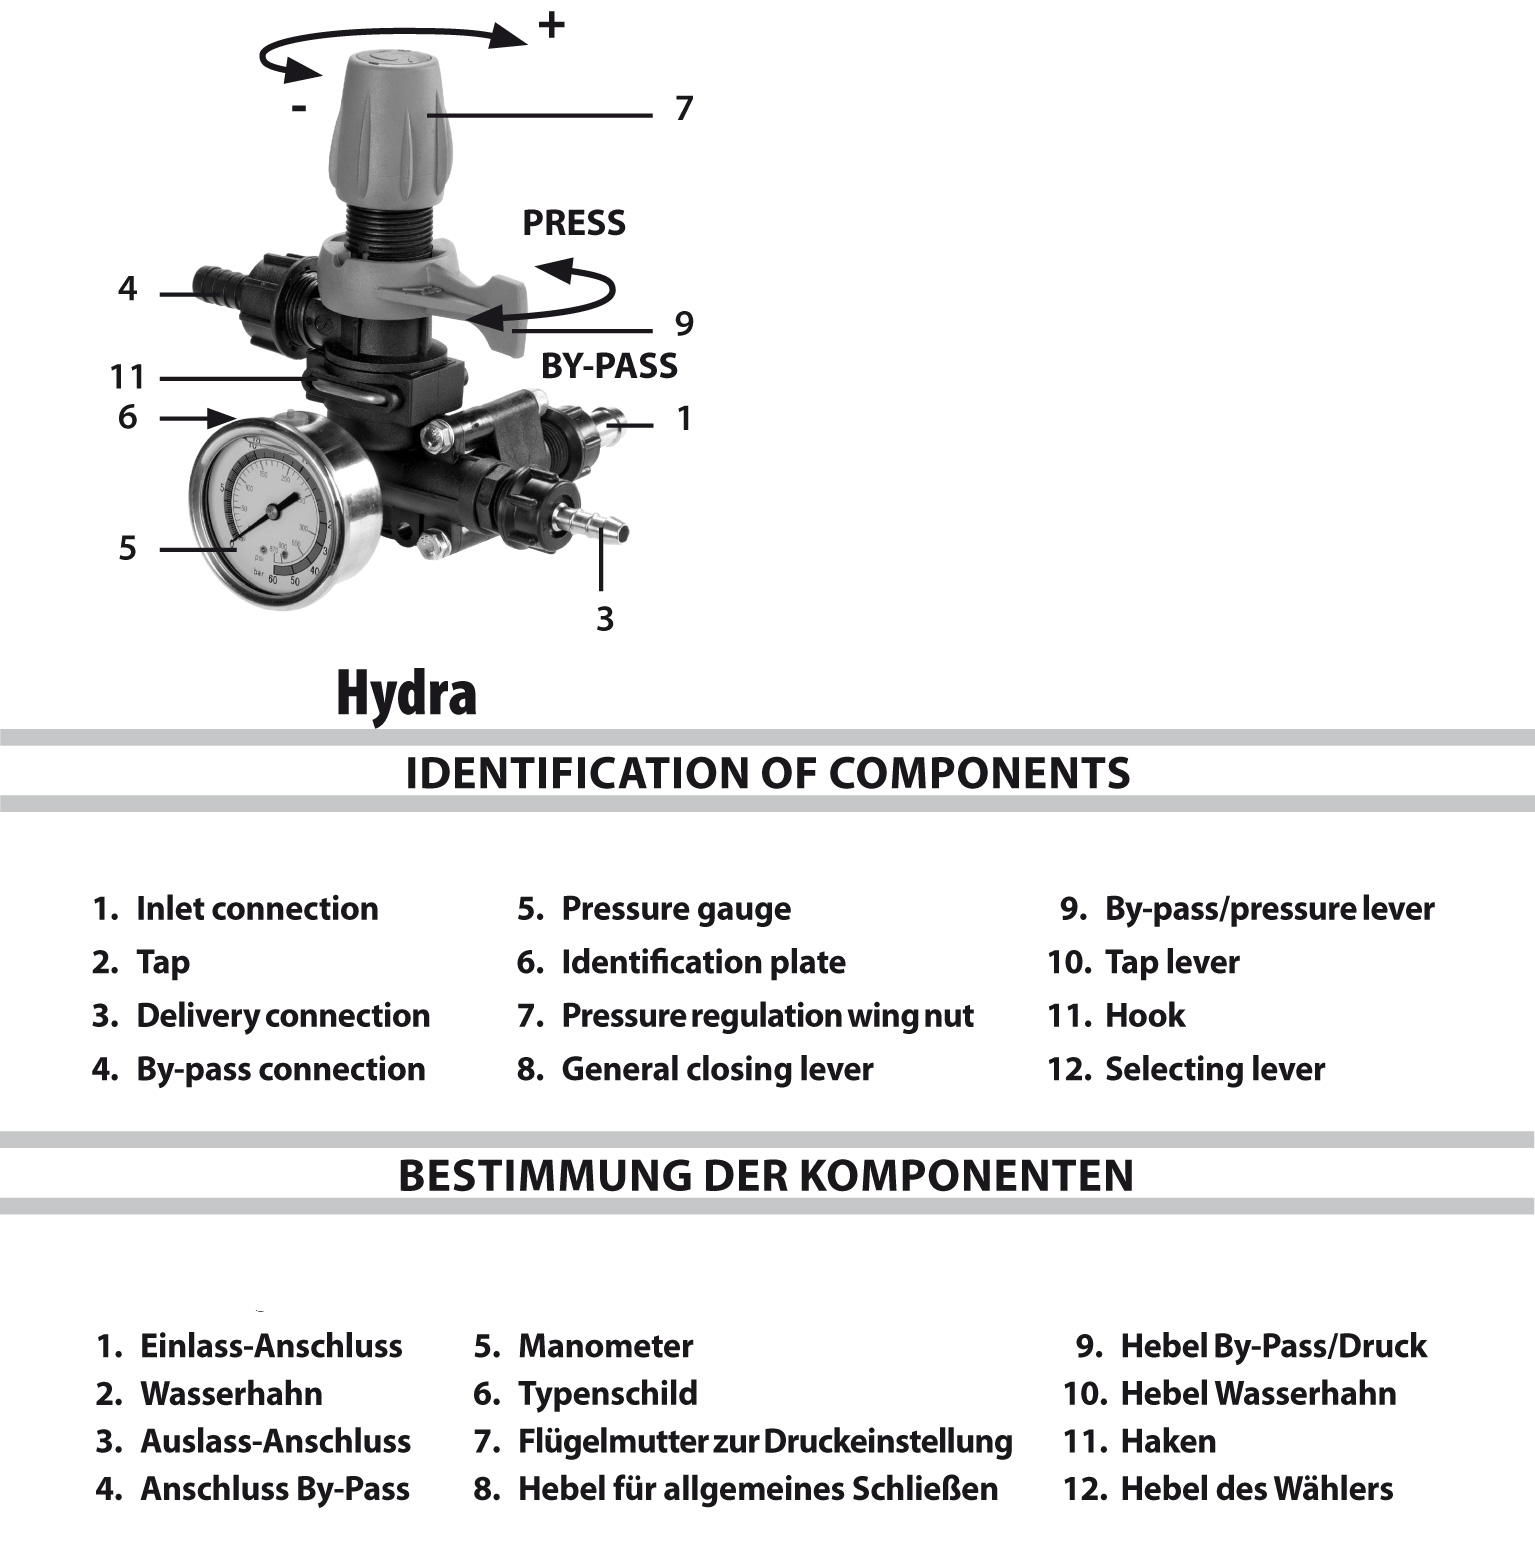 https://www.spritzenteile.de/images/product_images/original_images/Comet-pump-control-unit-Hydra.jpg